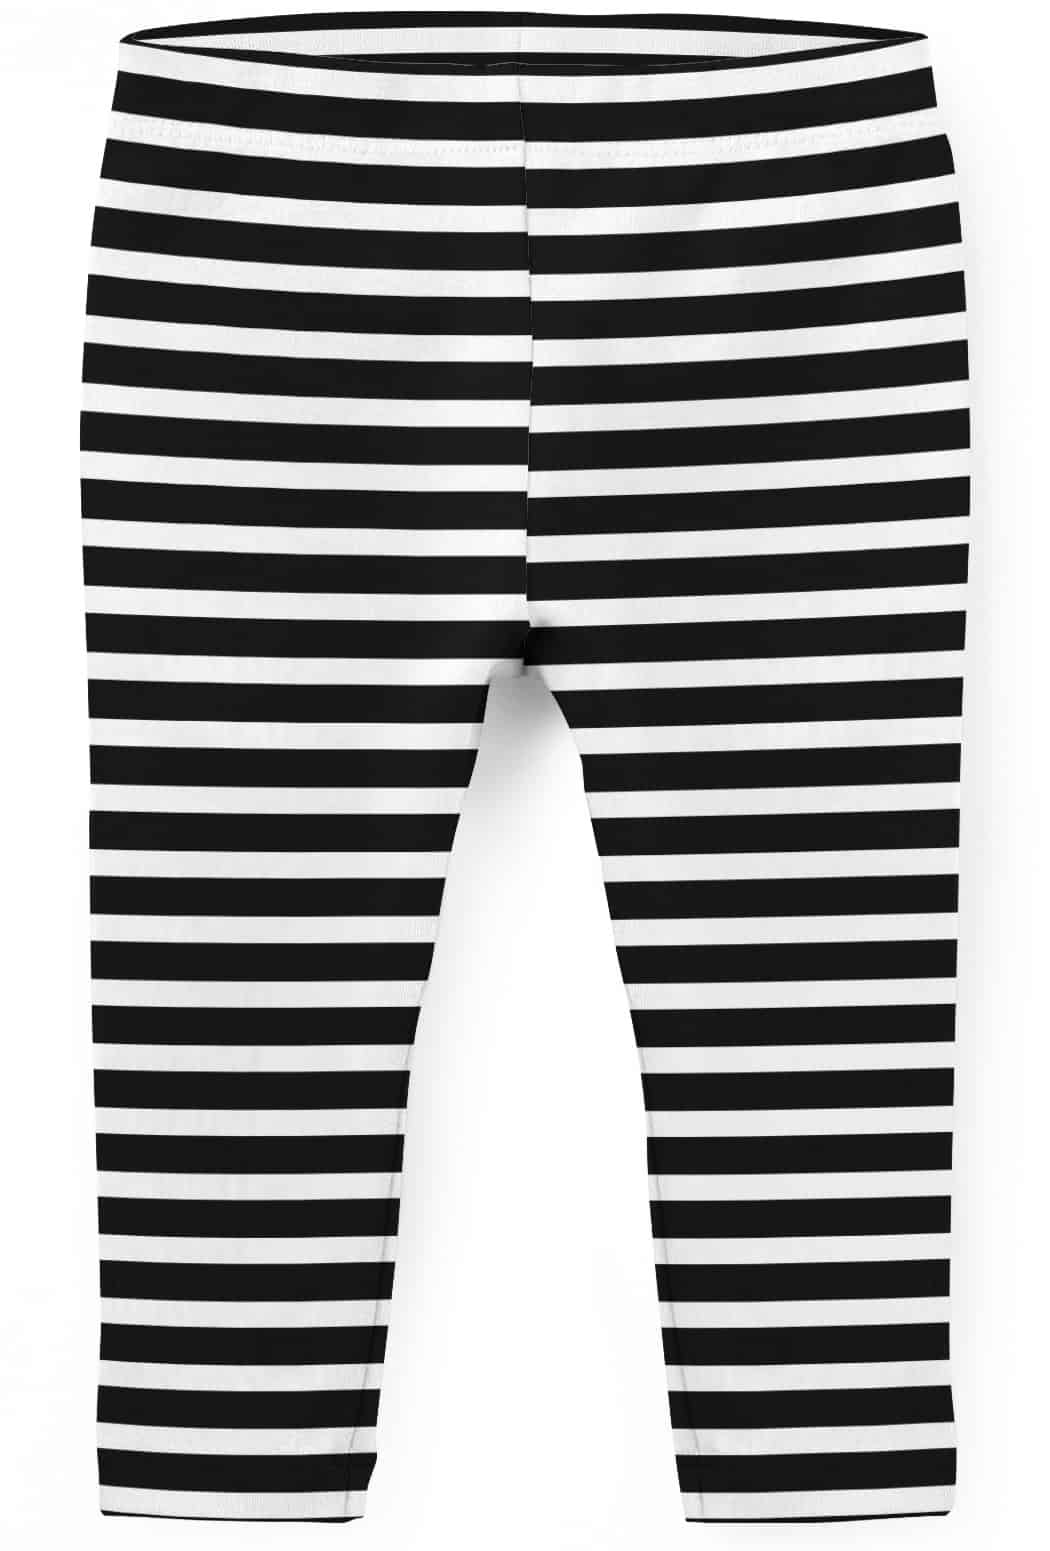 Black/White Toddler 2-Pack Black & White Leggings Set | carters.com